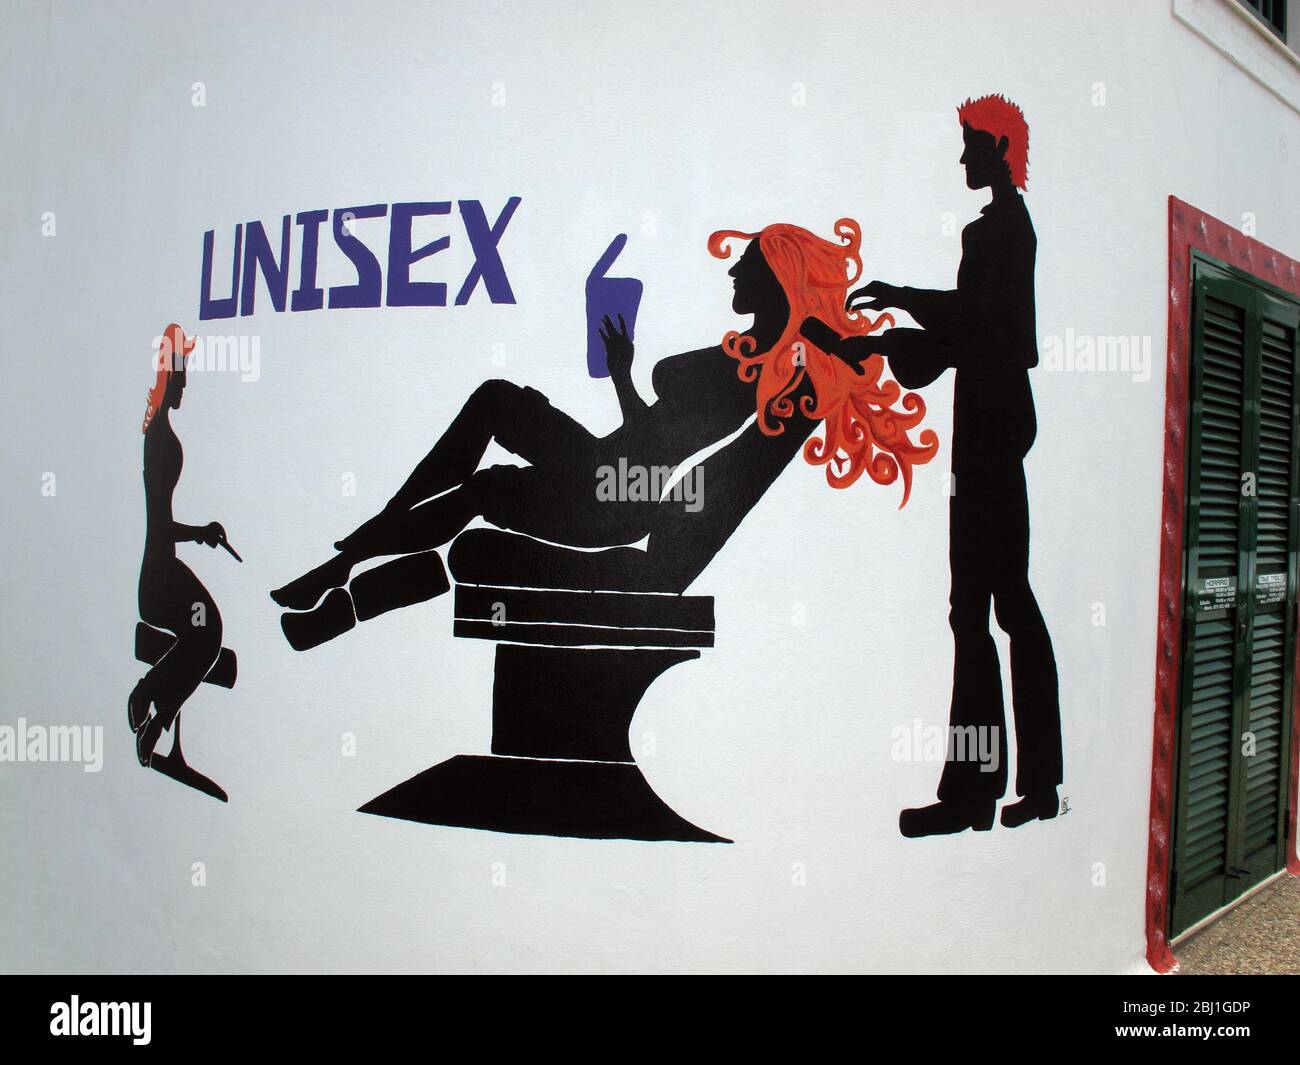 Coiffure unisex, affiche de coiffeurs Unisex, peint sur un mur, une femme dans une chaise ayant une coupe de cheveux Banque D'Images